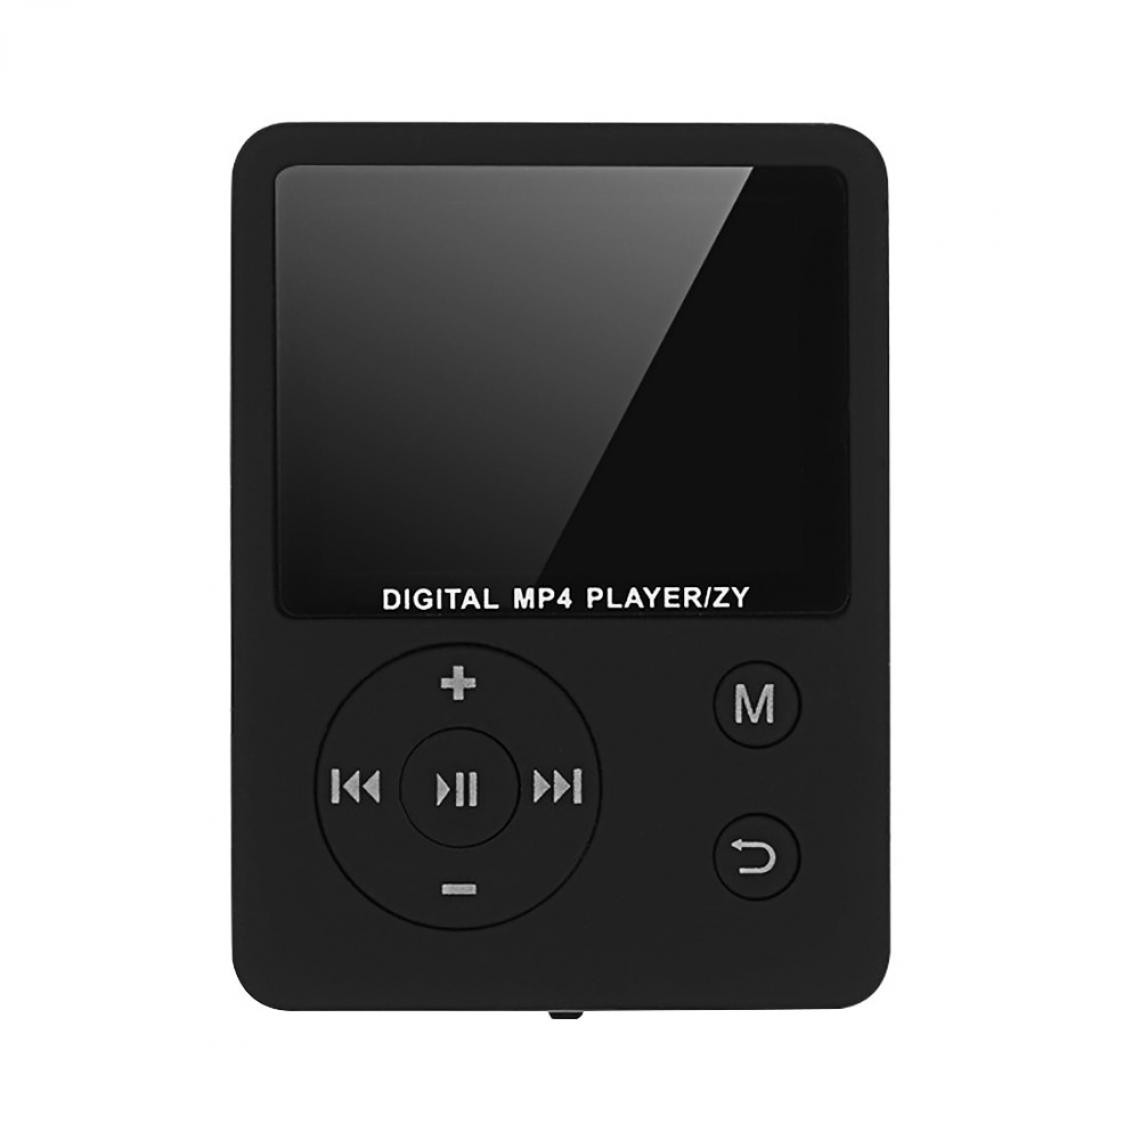 Universal - Écran tactile de 1,8 pouces, lecteur MP3, lecteur de musique Bluetooth, haut-parleur intégré, support FM, vidéo, vidéo, e-book, haut-parleur HiFi.(Le noir) - Lecteur MP3 / MP4